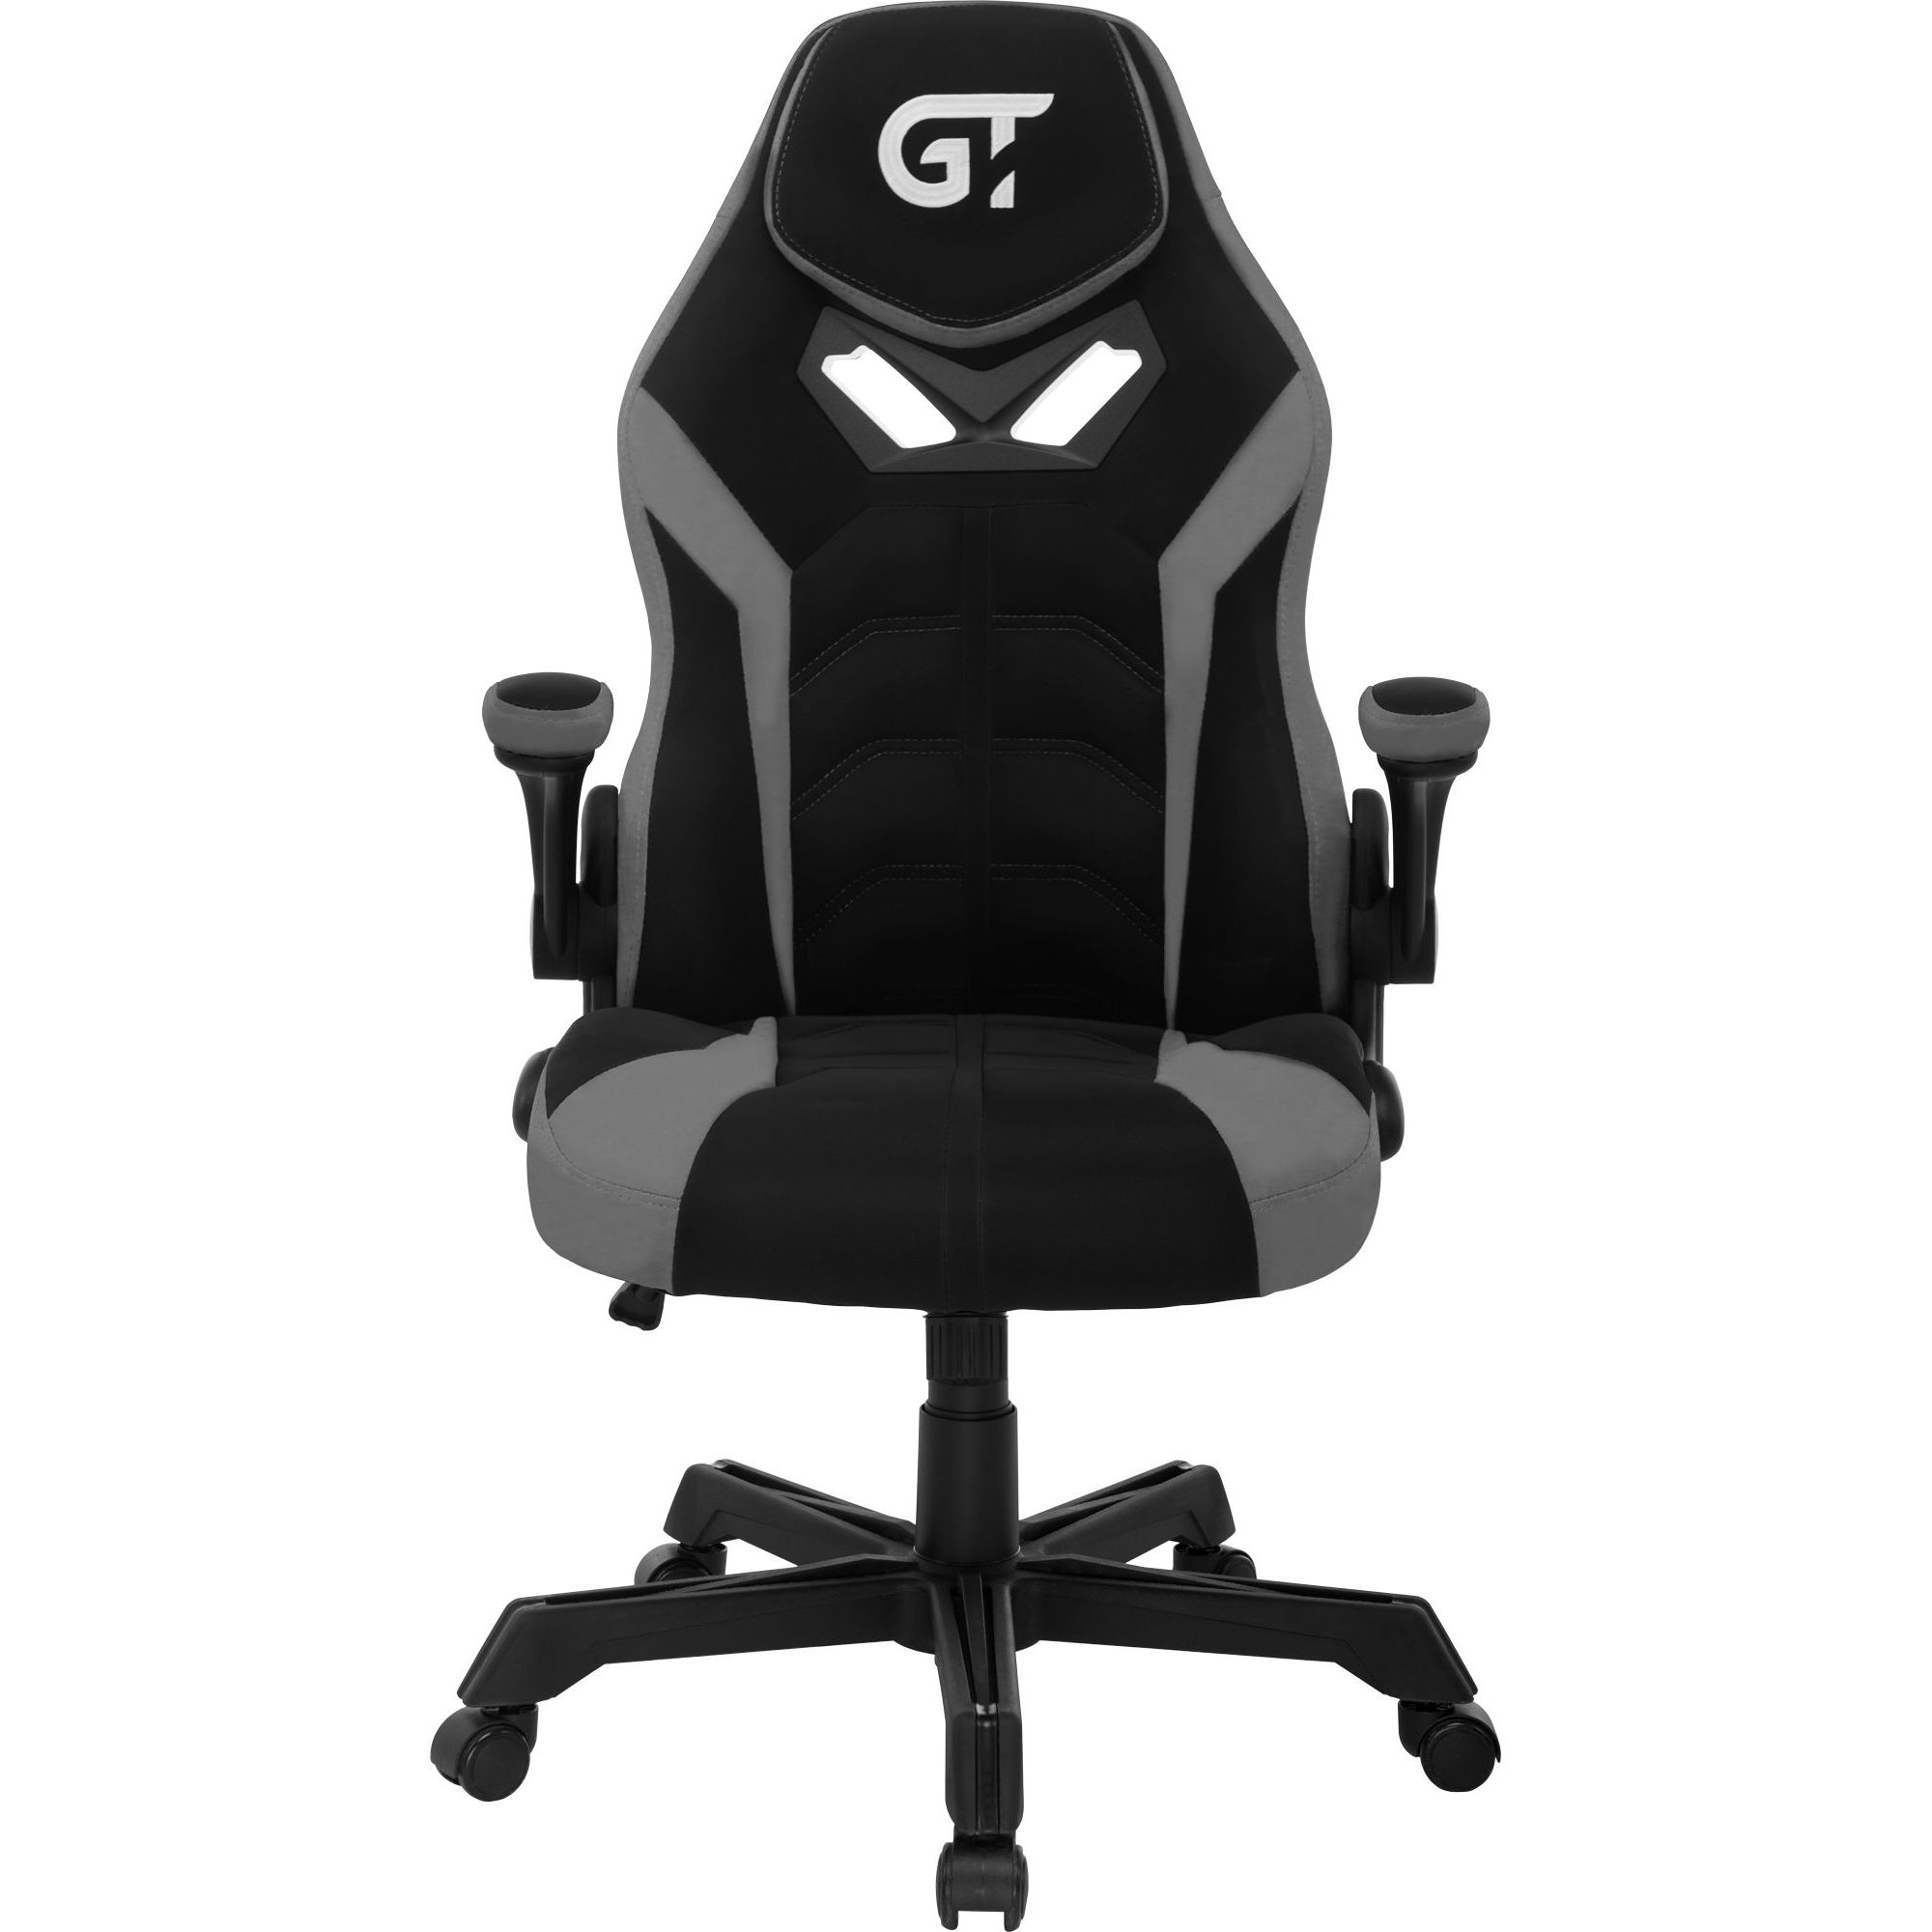 Геймерское кресло GT Racer черное с серым (X-2656 Black/Gray) - фото 1